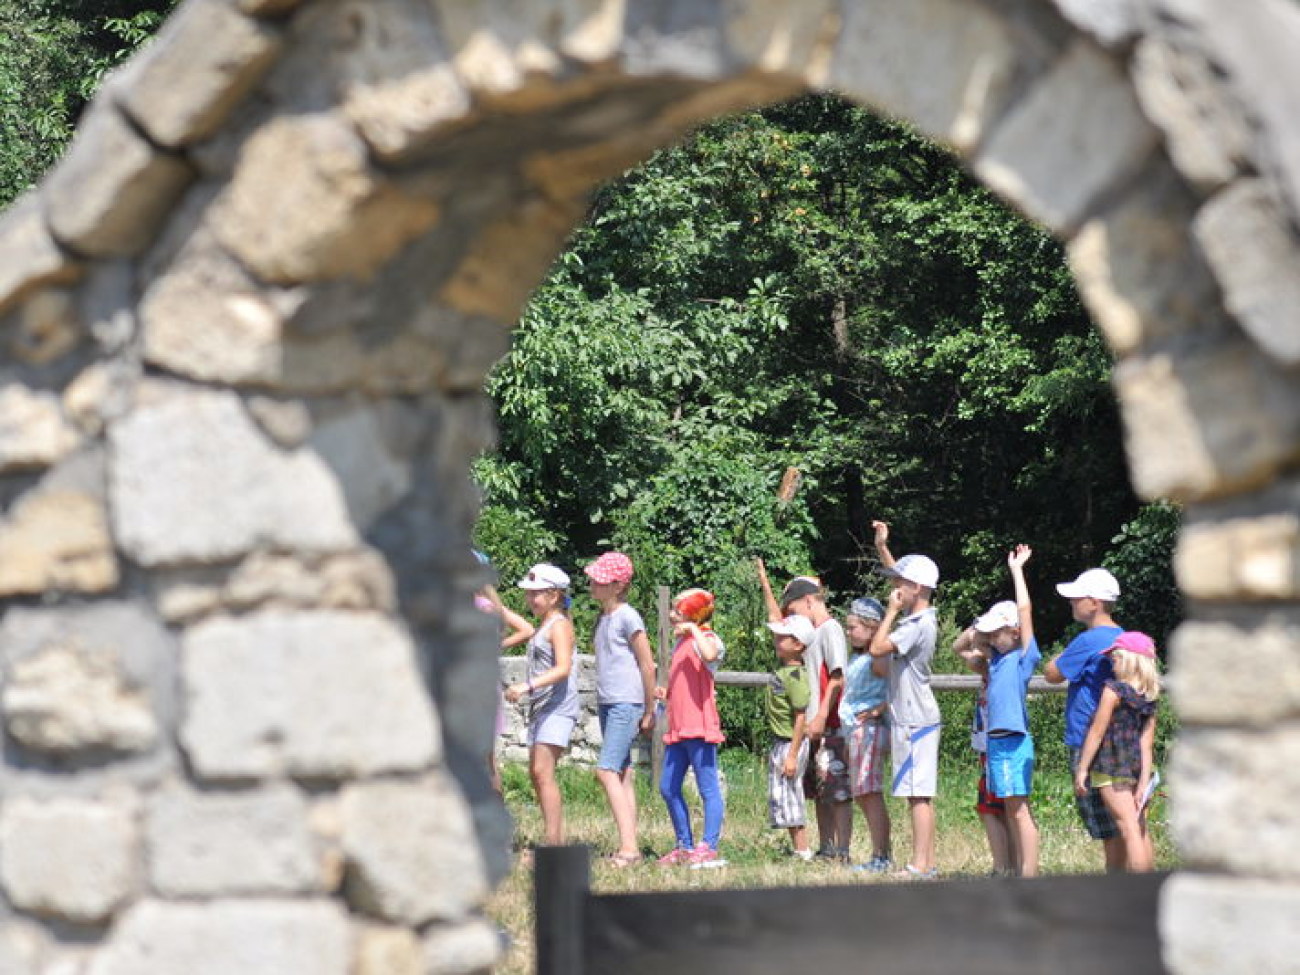 Пирогово устроило праздник для детей-беженцев, 7 августа 2014г.